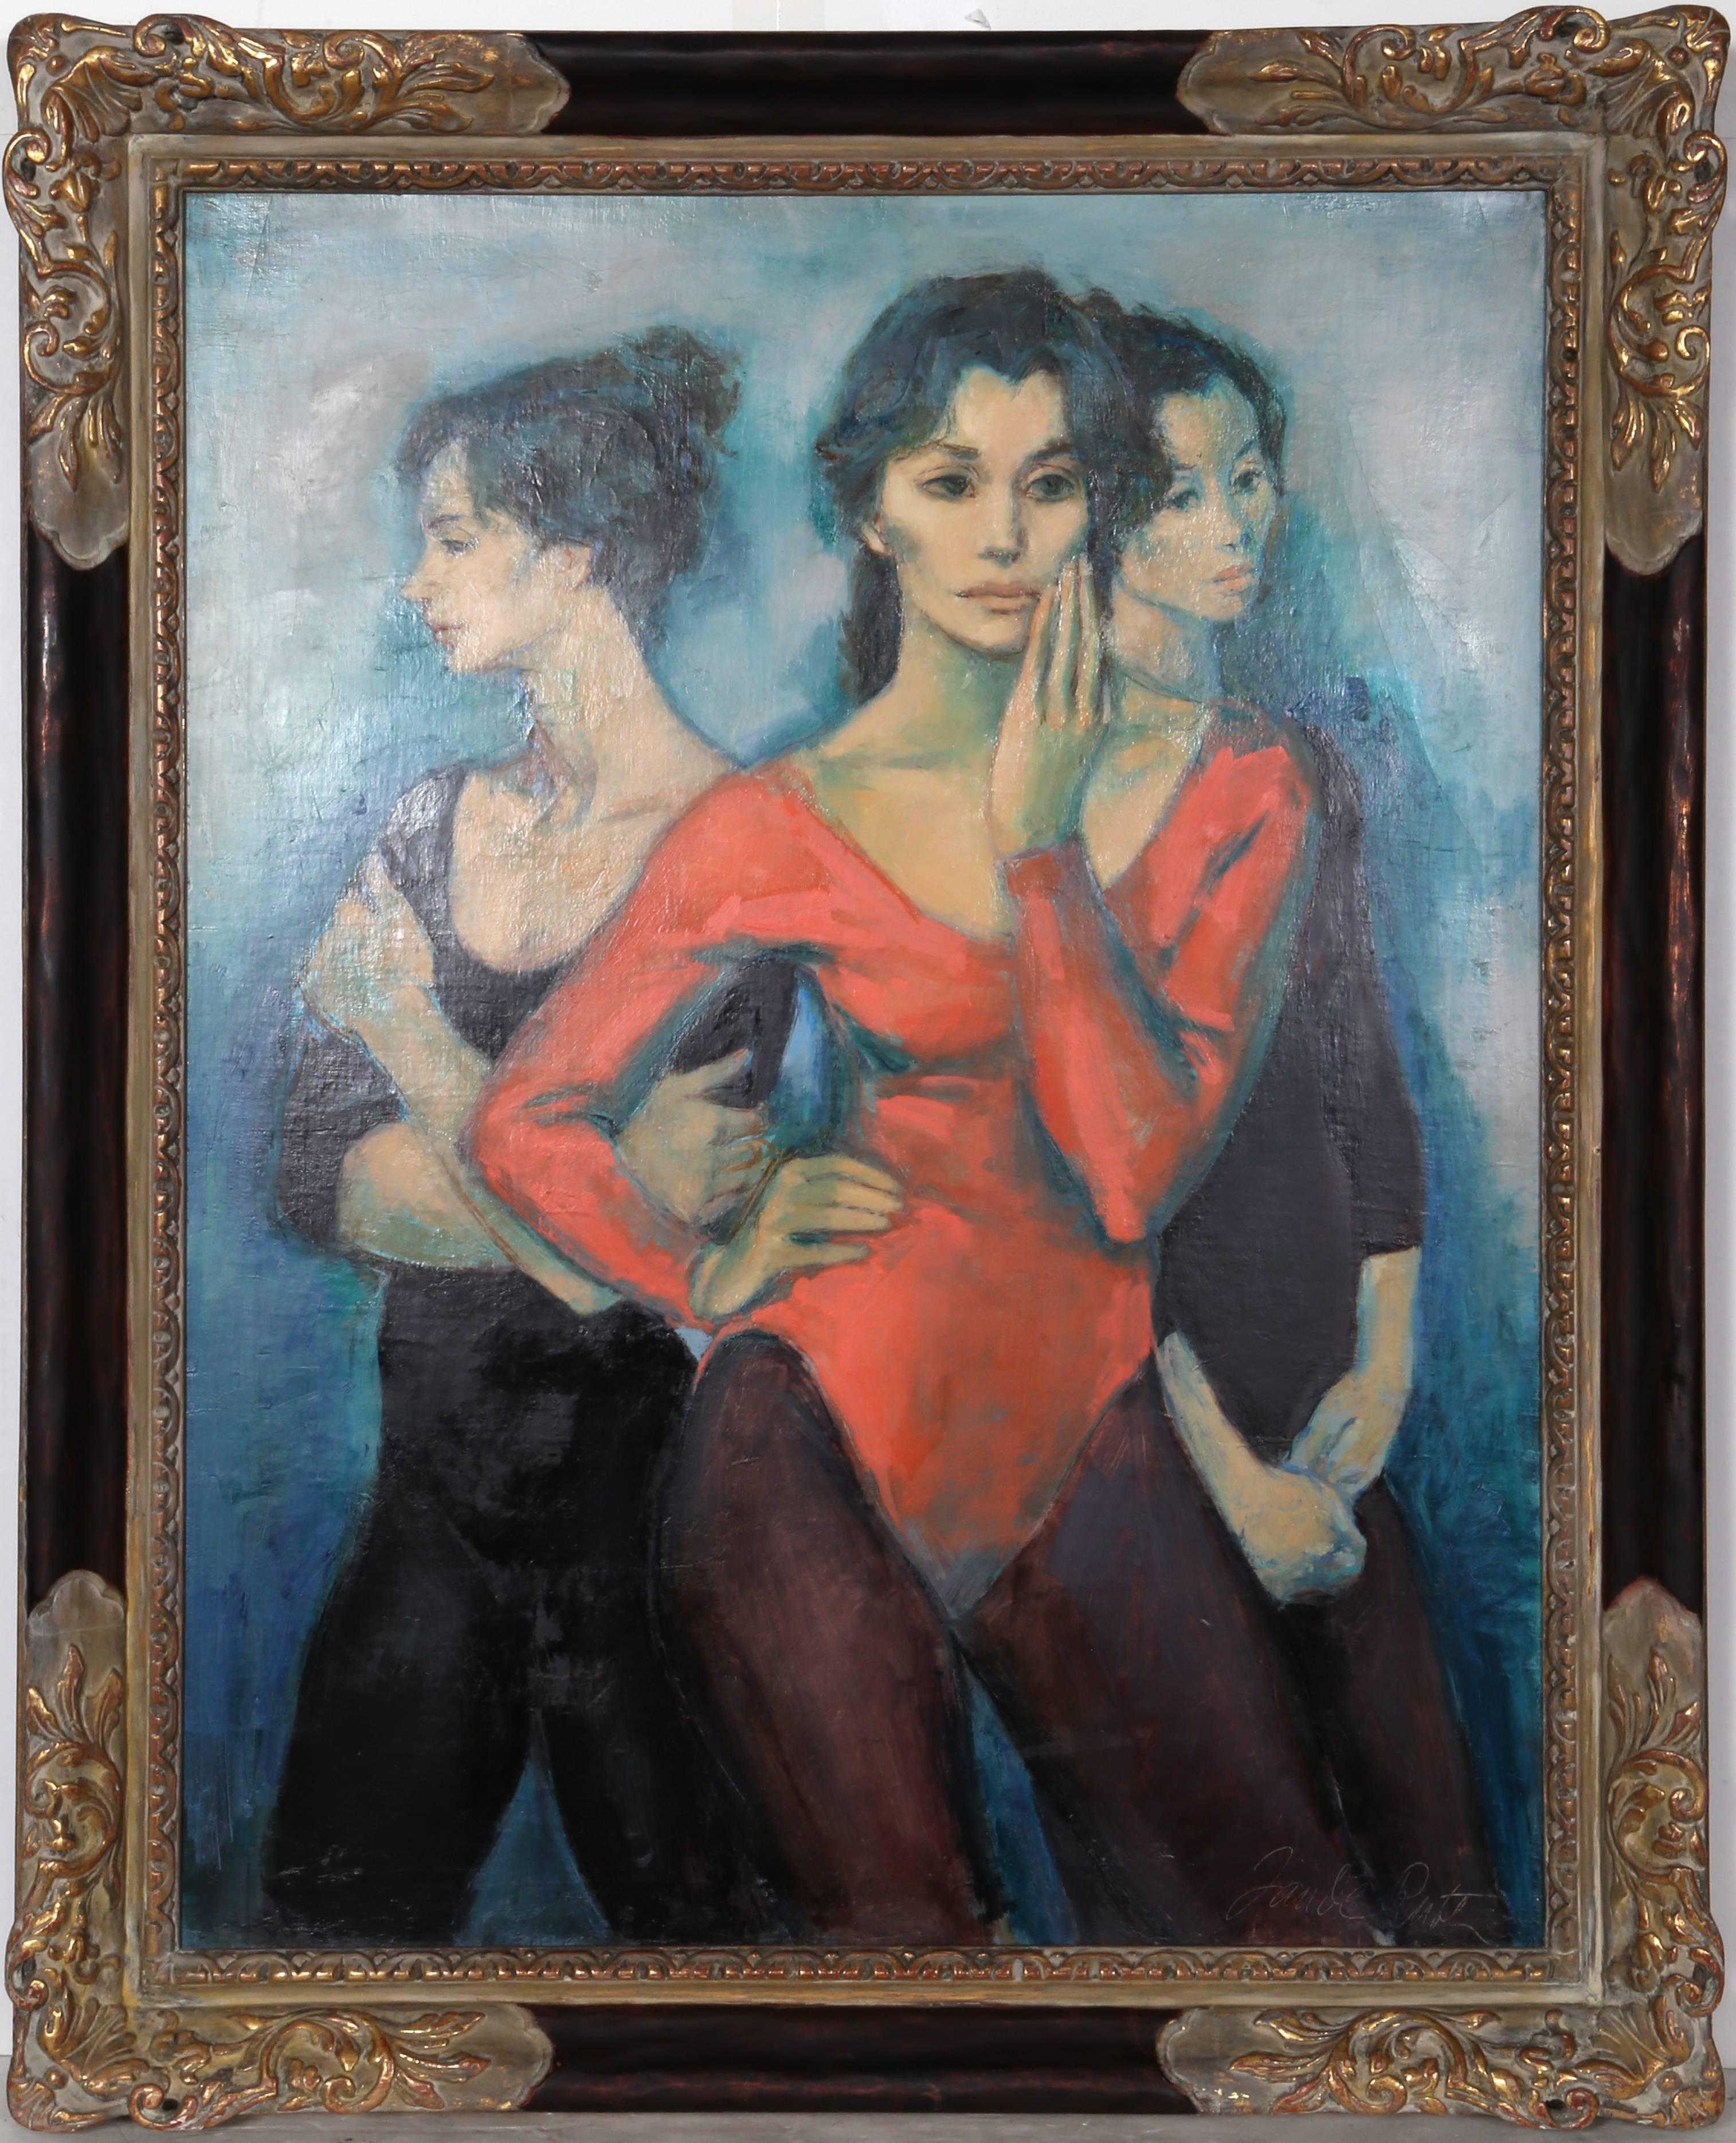 Artistics : Jan De Ruth, Tchèque (1922 - 1991)
Titre : Trois danseurs
Année : vers 1965
Moyen d'expression : Huile sur toile, signée à gauche.
Taille : 36 x 28 pouces
Taille du cadre : 42 x 34 pouces